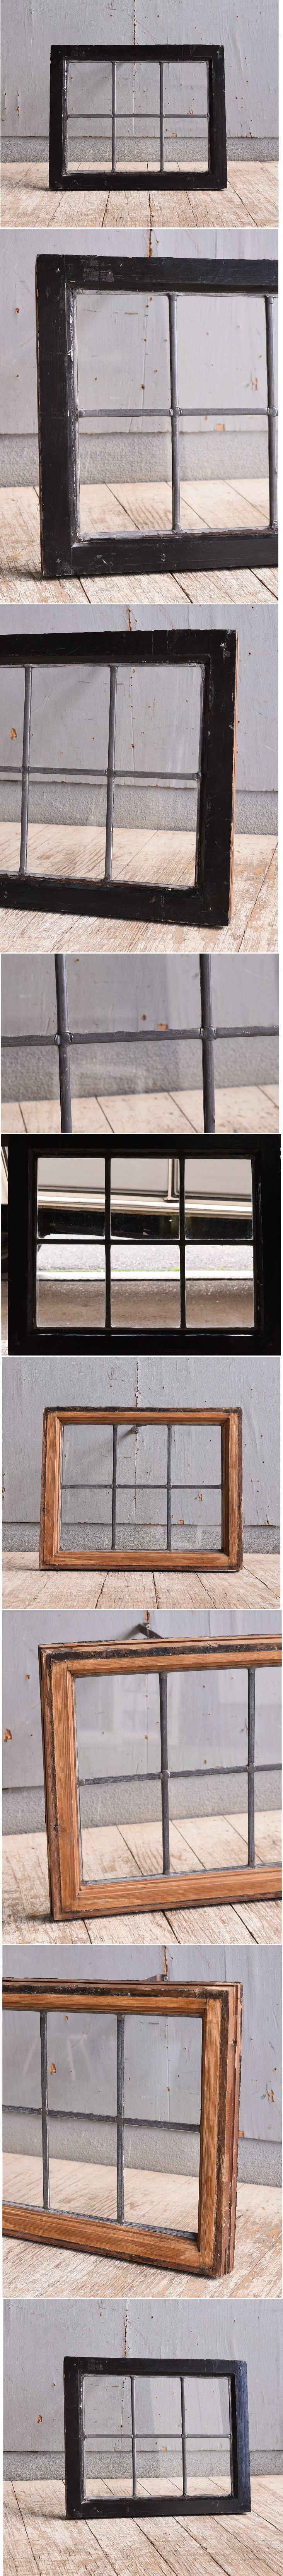 イギリス アンティーク 窓 無色透明 10882